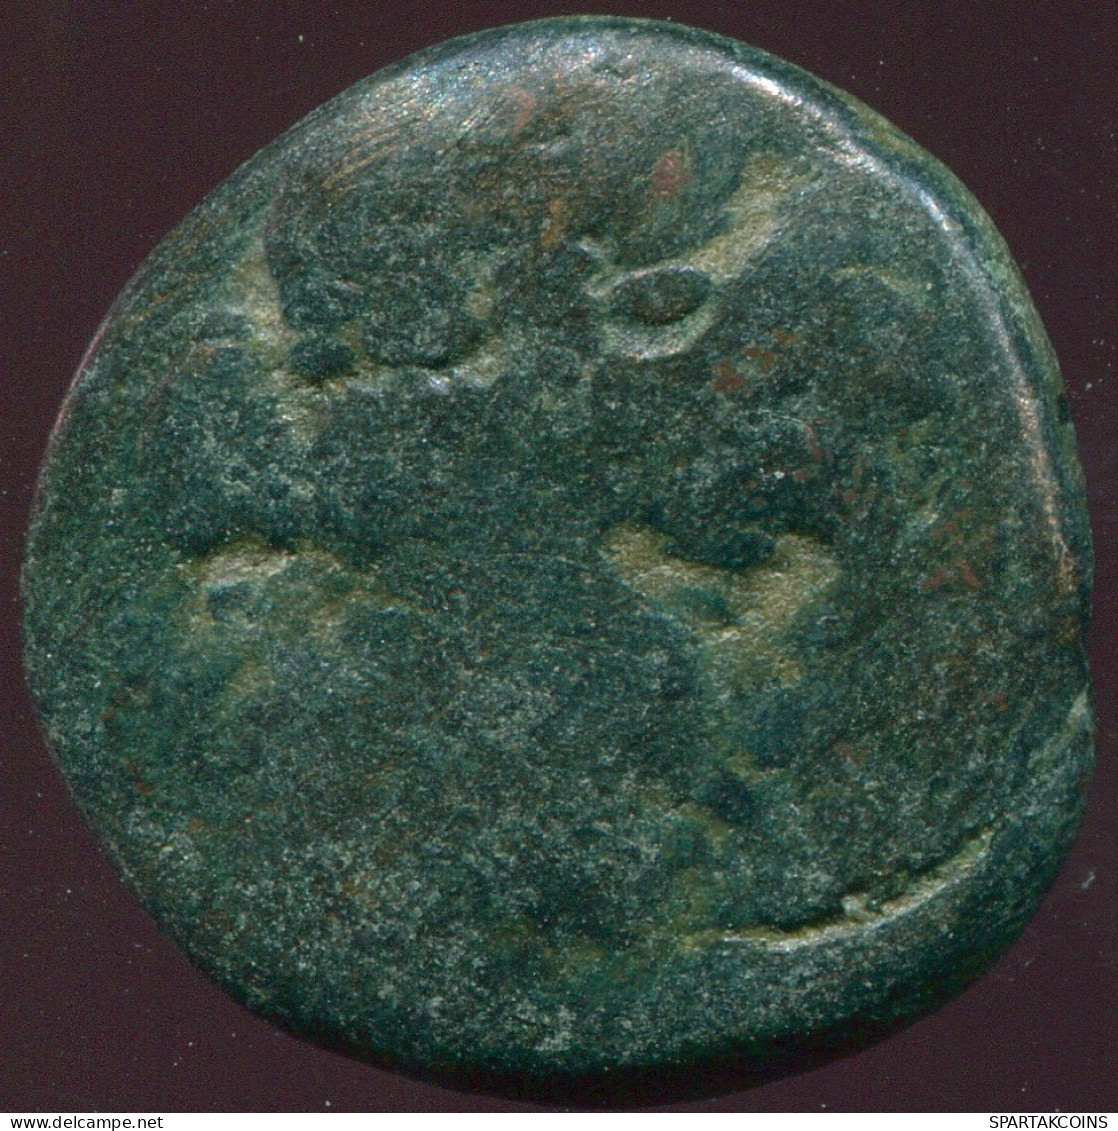 ARTEMIS Ancient Authentic GREEK Coin 6.47g/20.17mm #GRK1192.7.U.A - Grecques